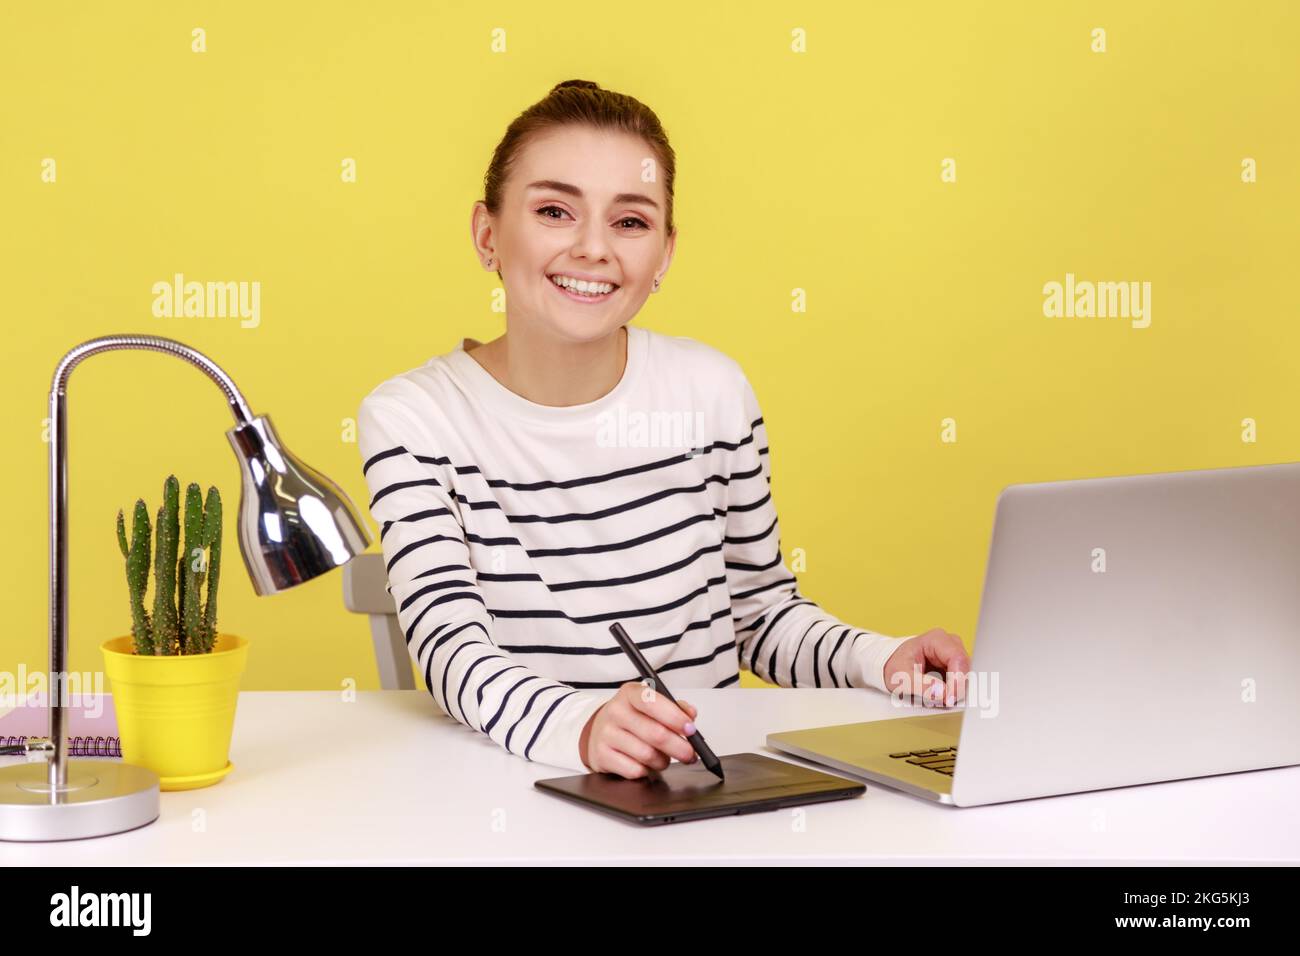 Eine schöne lächelnde kreative Designerin, die am Arbeitsplatz mit einem Tablet und einem Notebook sitzt und mit fröhlichem Ausdruck in die Kamera schaut. Studioaufnahmen im Innenbereich isoliert auf gelbem Hintergrund. Stockfoto